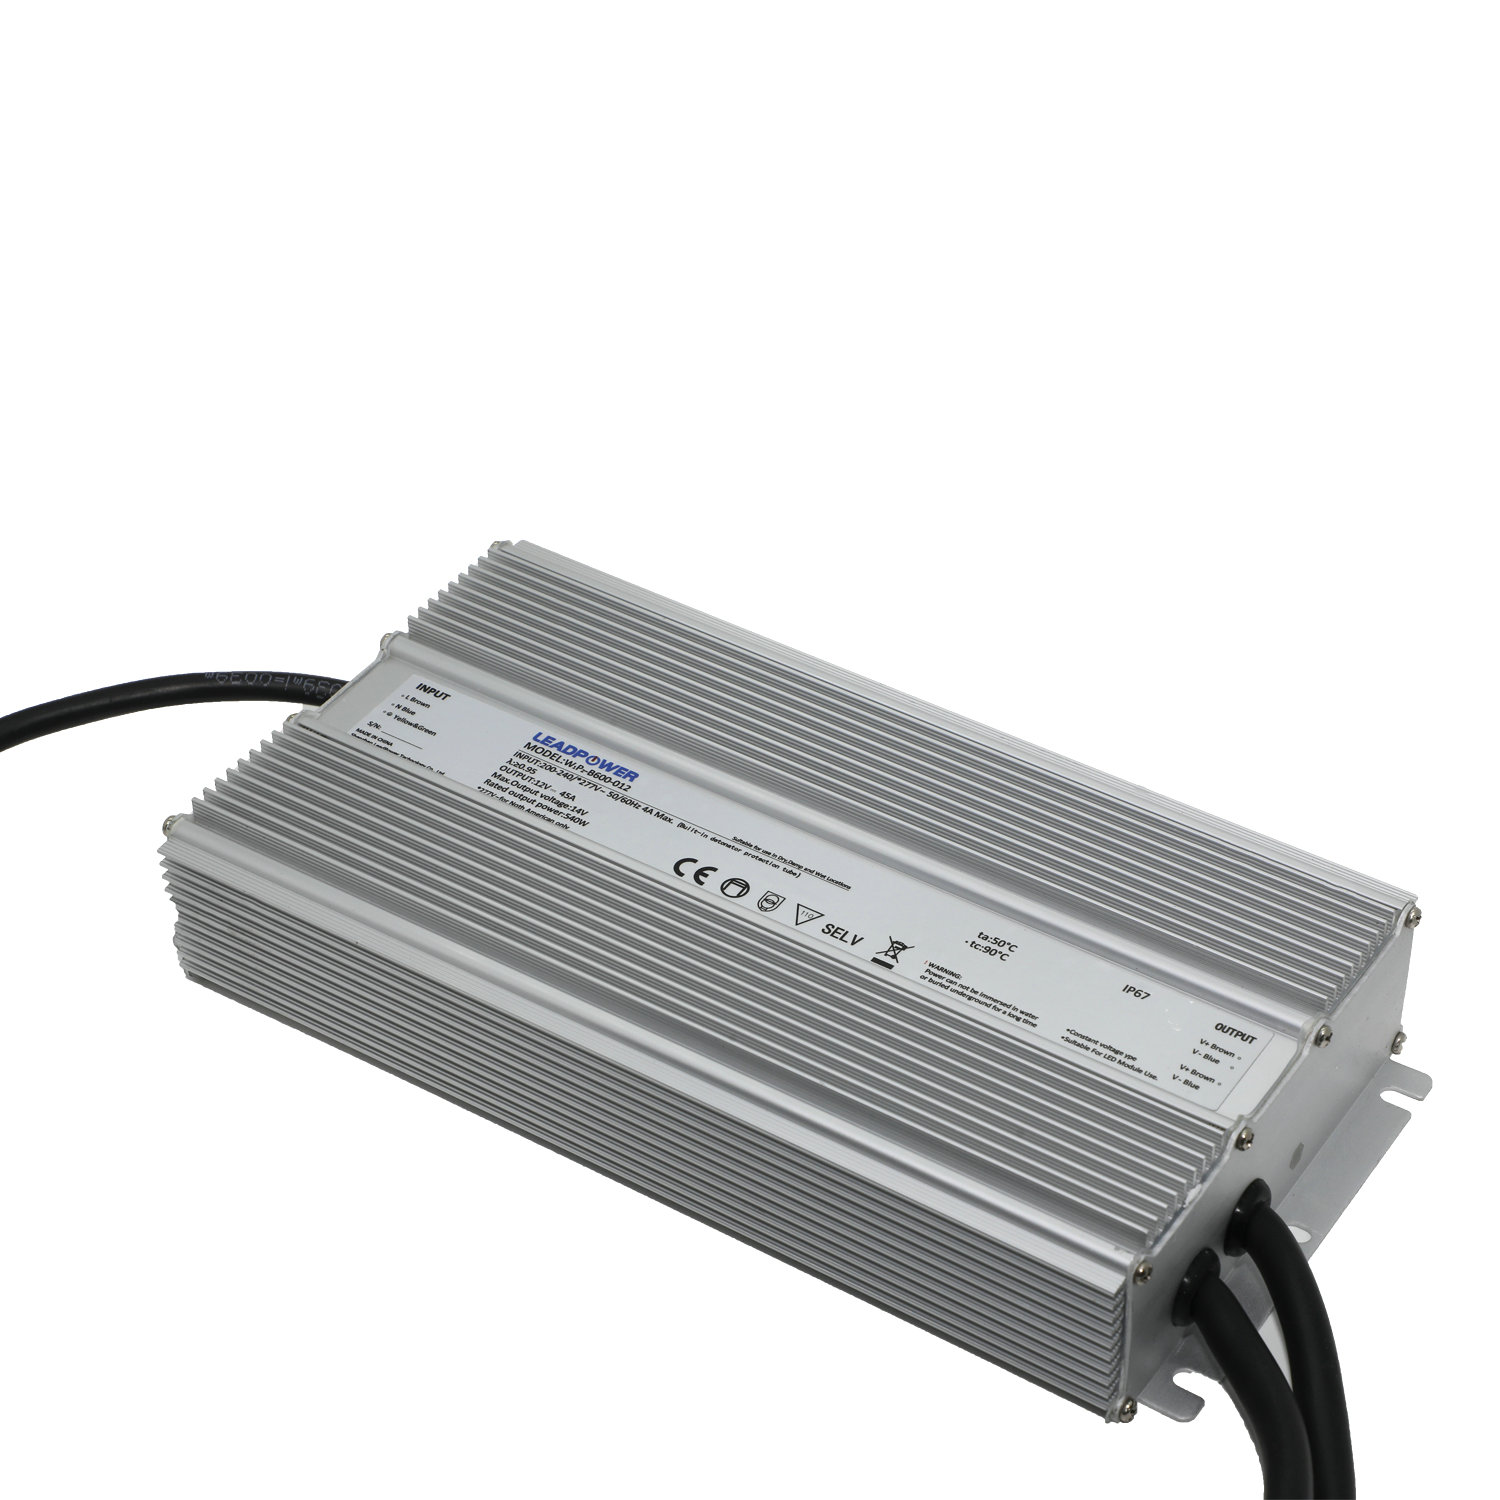 WBP-B600 Series Waterproof LED Power Supply